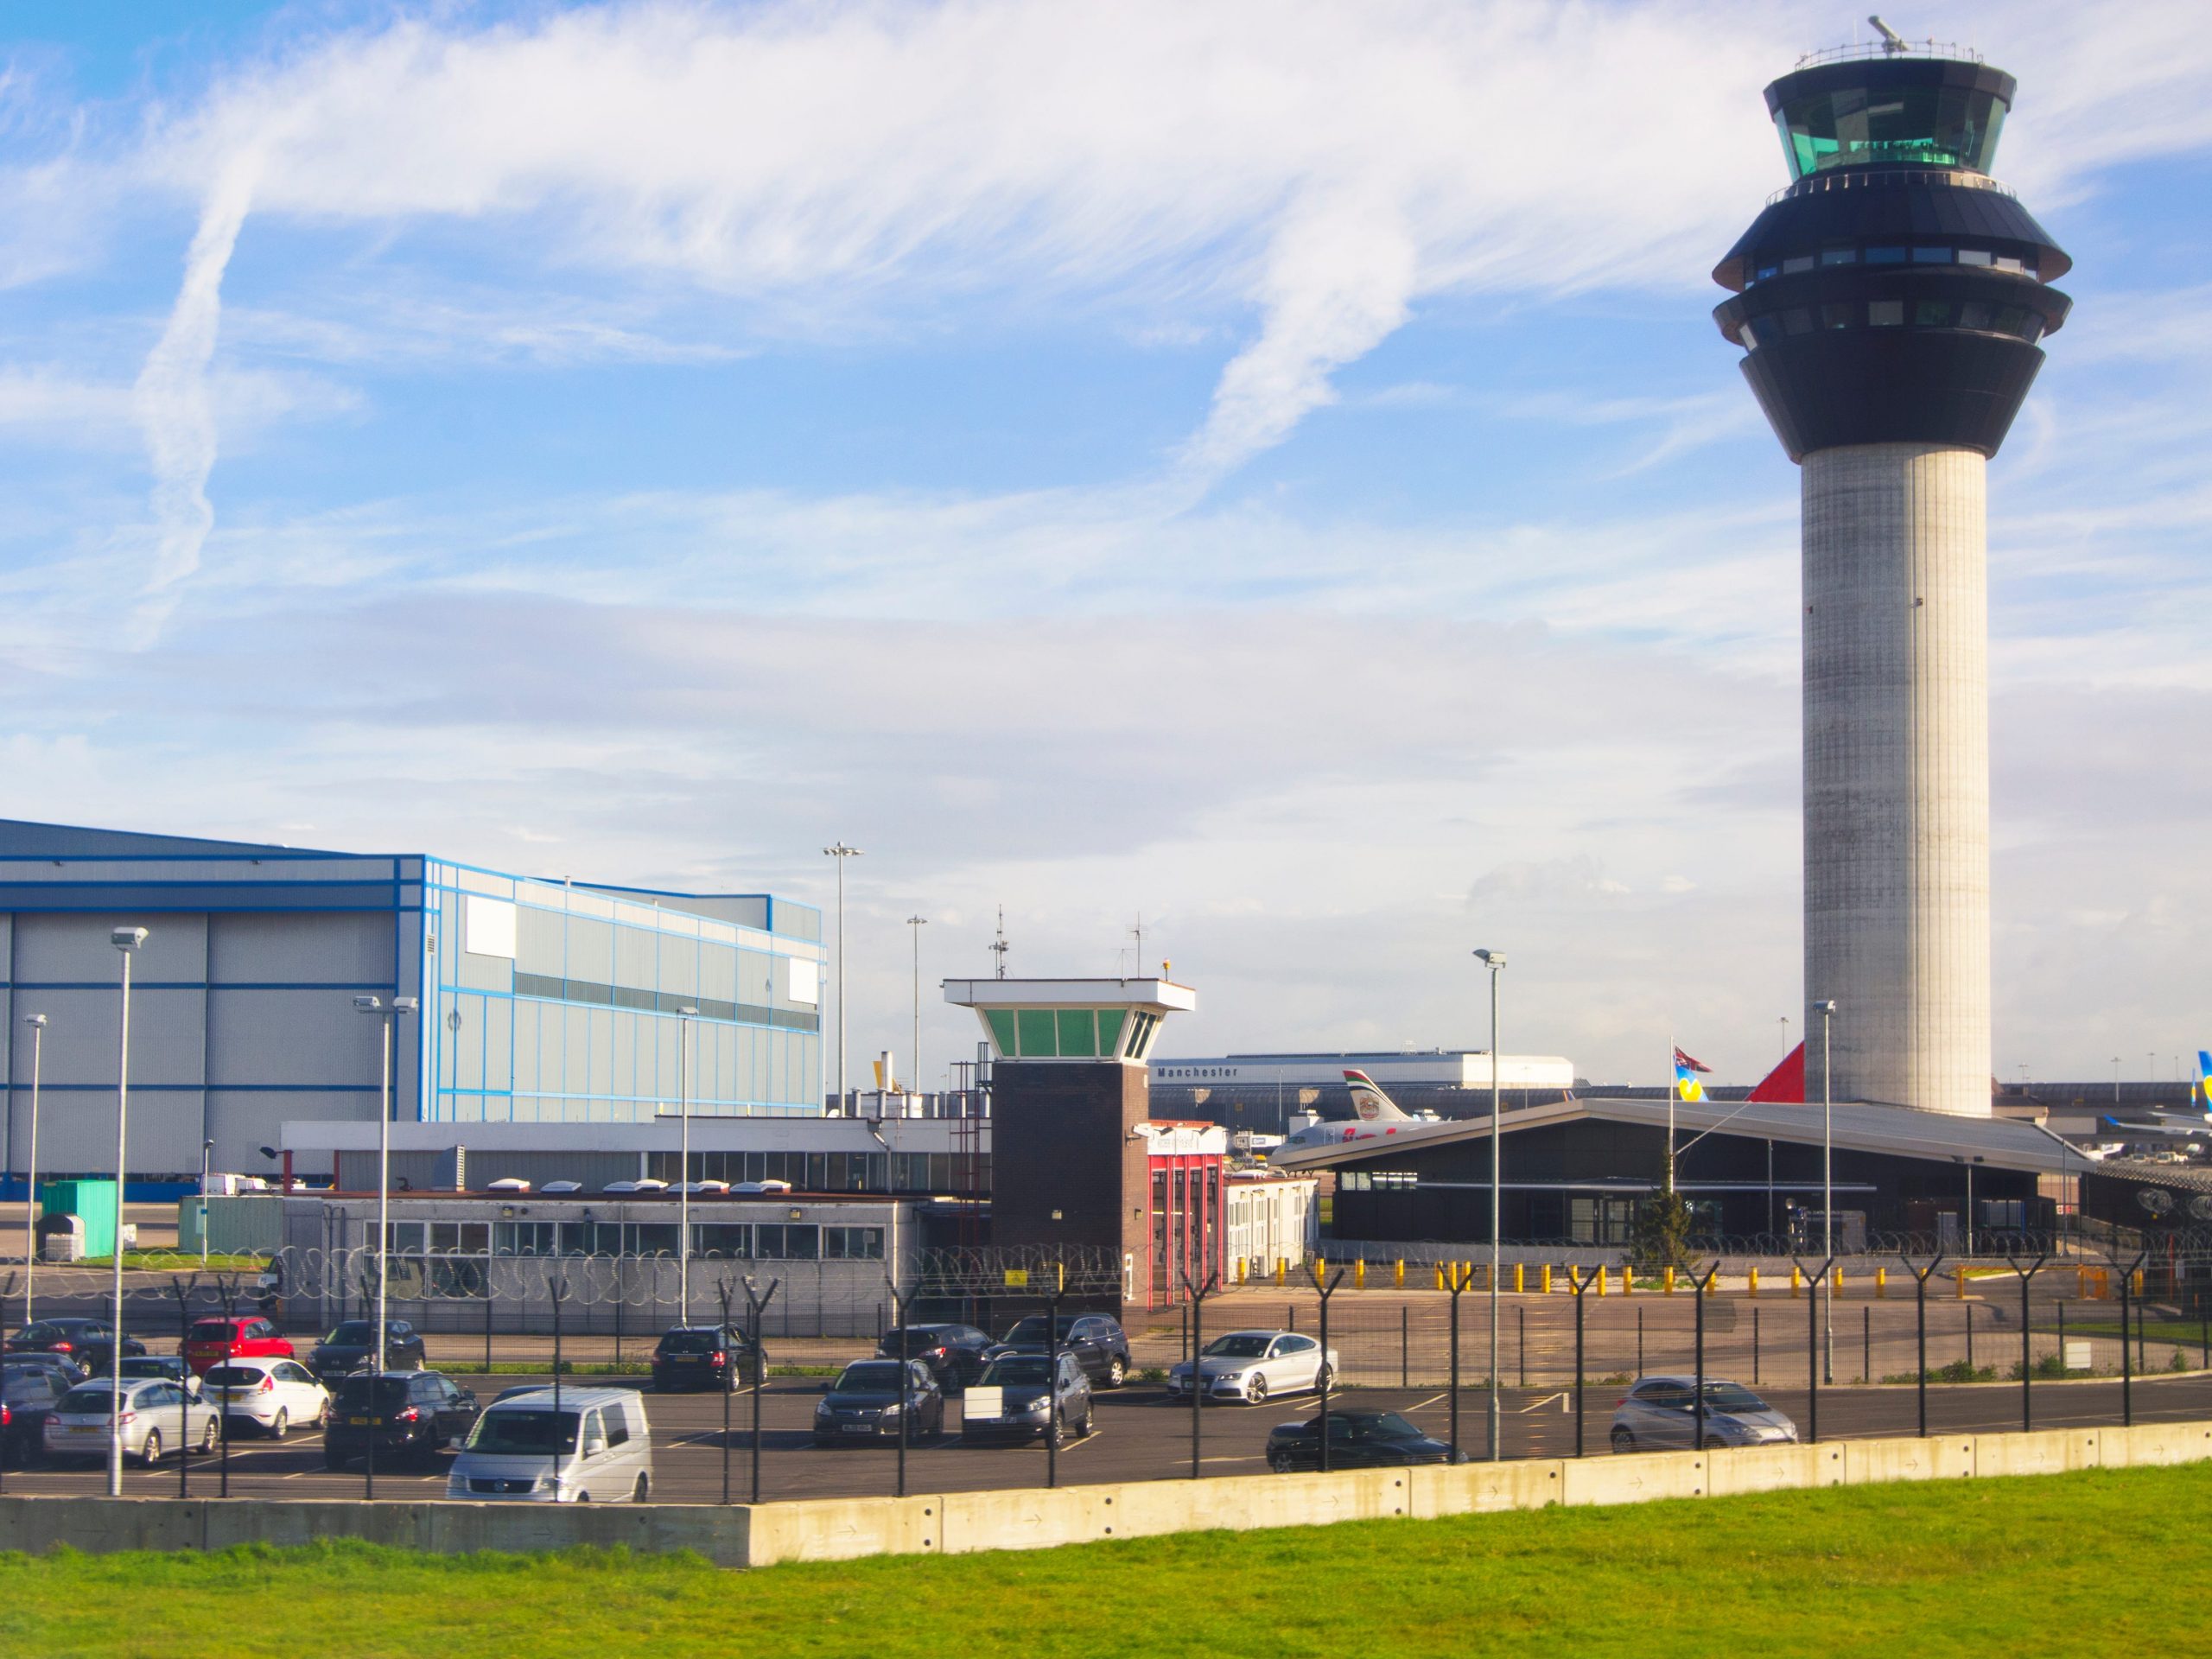 Verkeerstoren en terminalgebouwen op de internationale luchthaven van Manchester, VK.